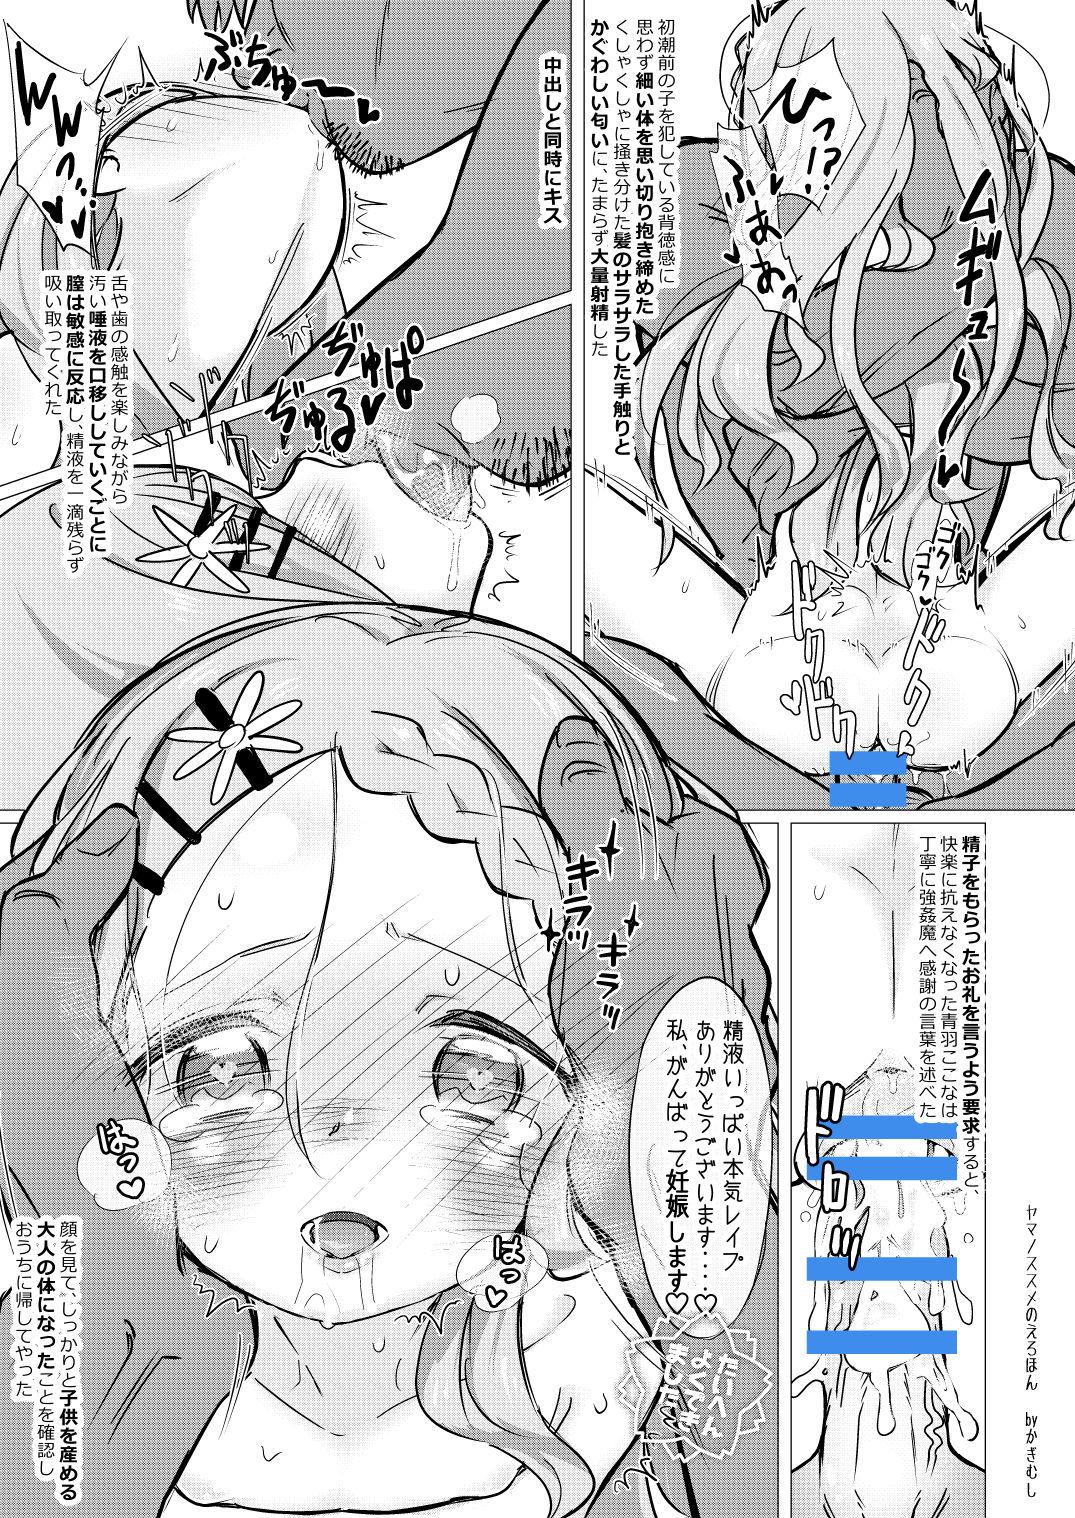 Nipples Yama no Susume no Erohon - Yama no susume Flashing - Page 10